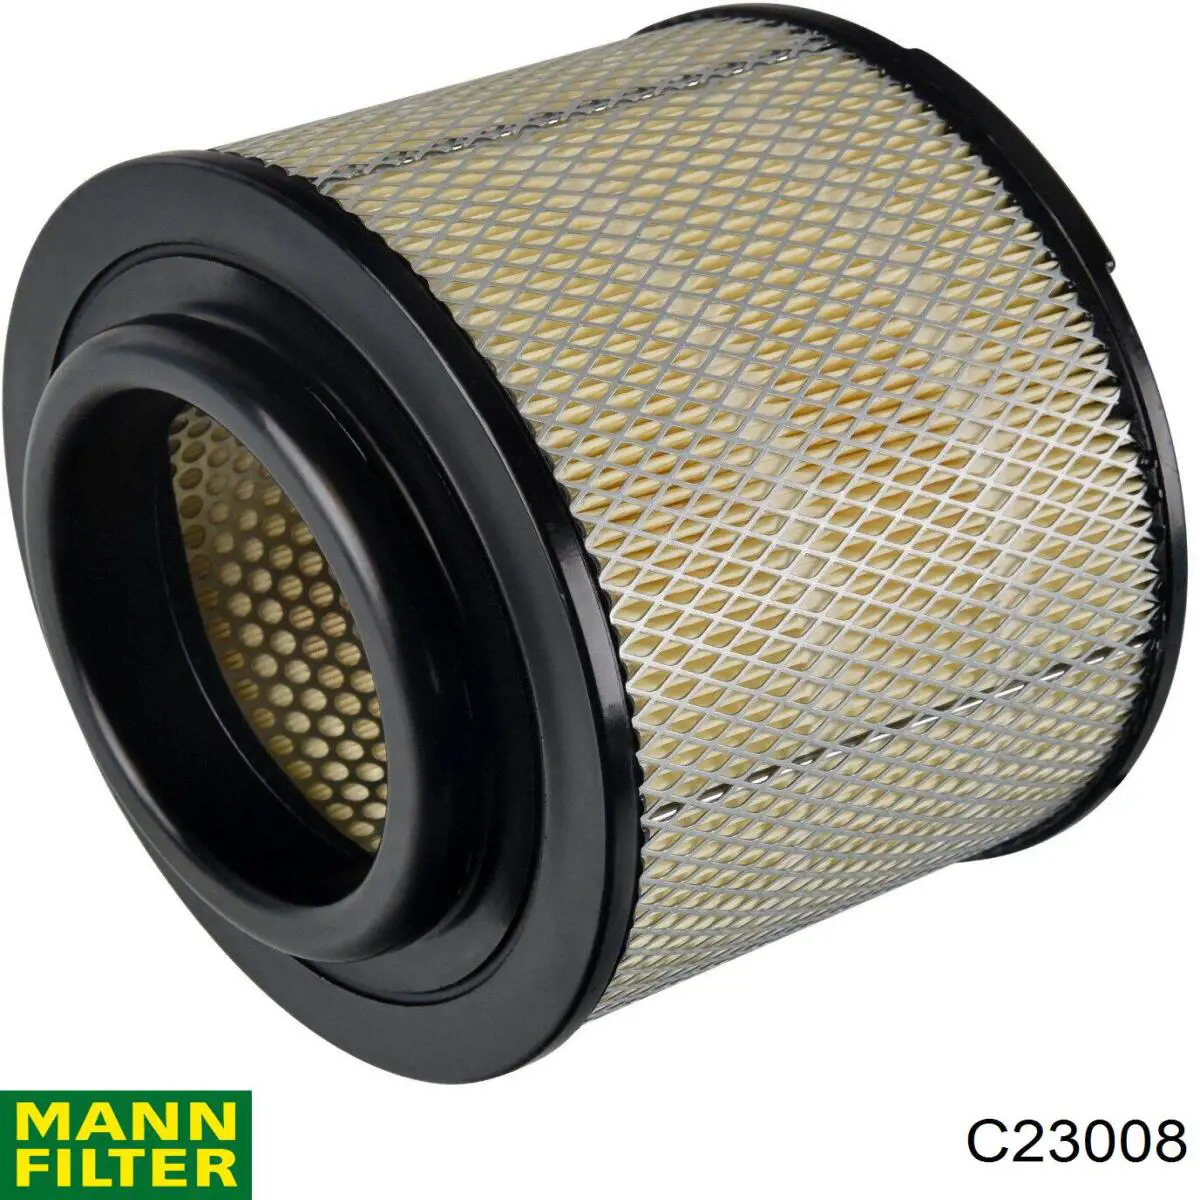 Filtro de aire C23008 Mann-Filter